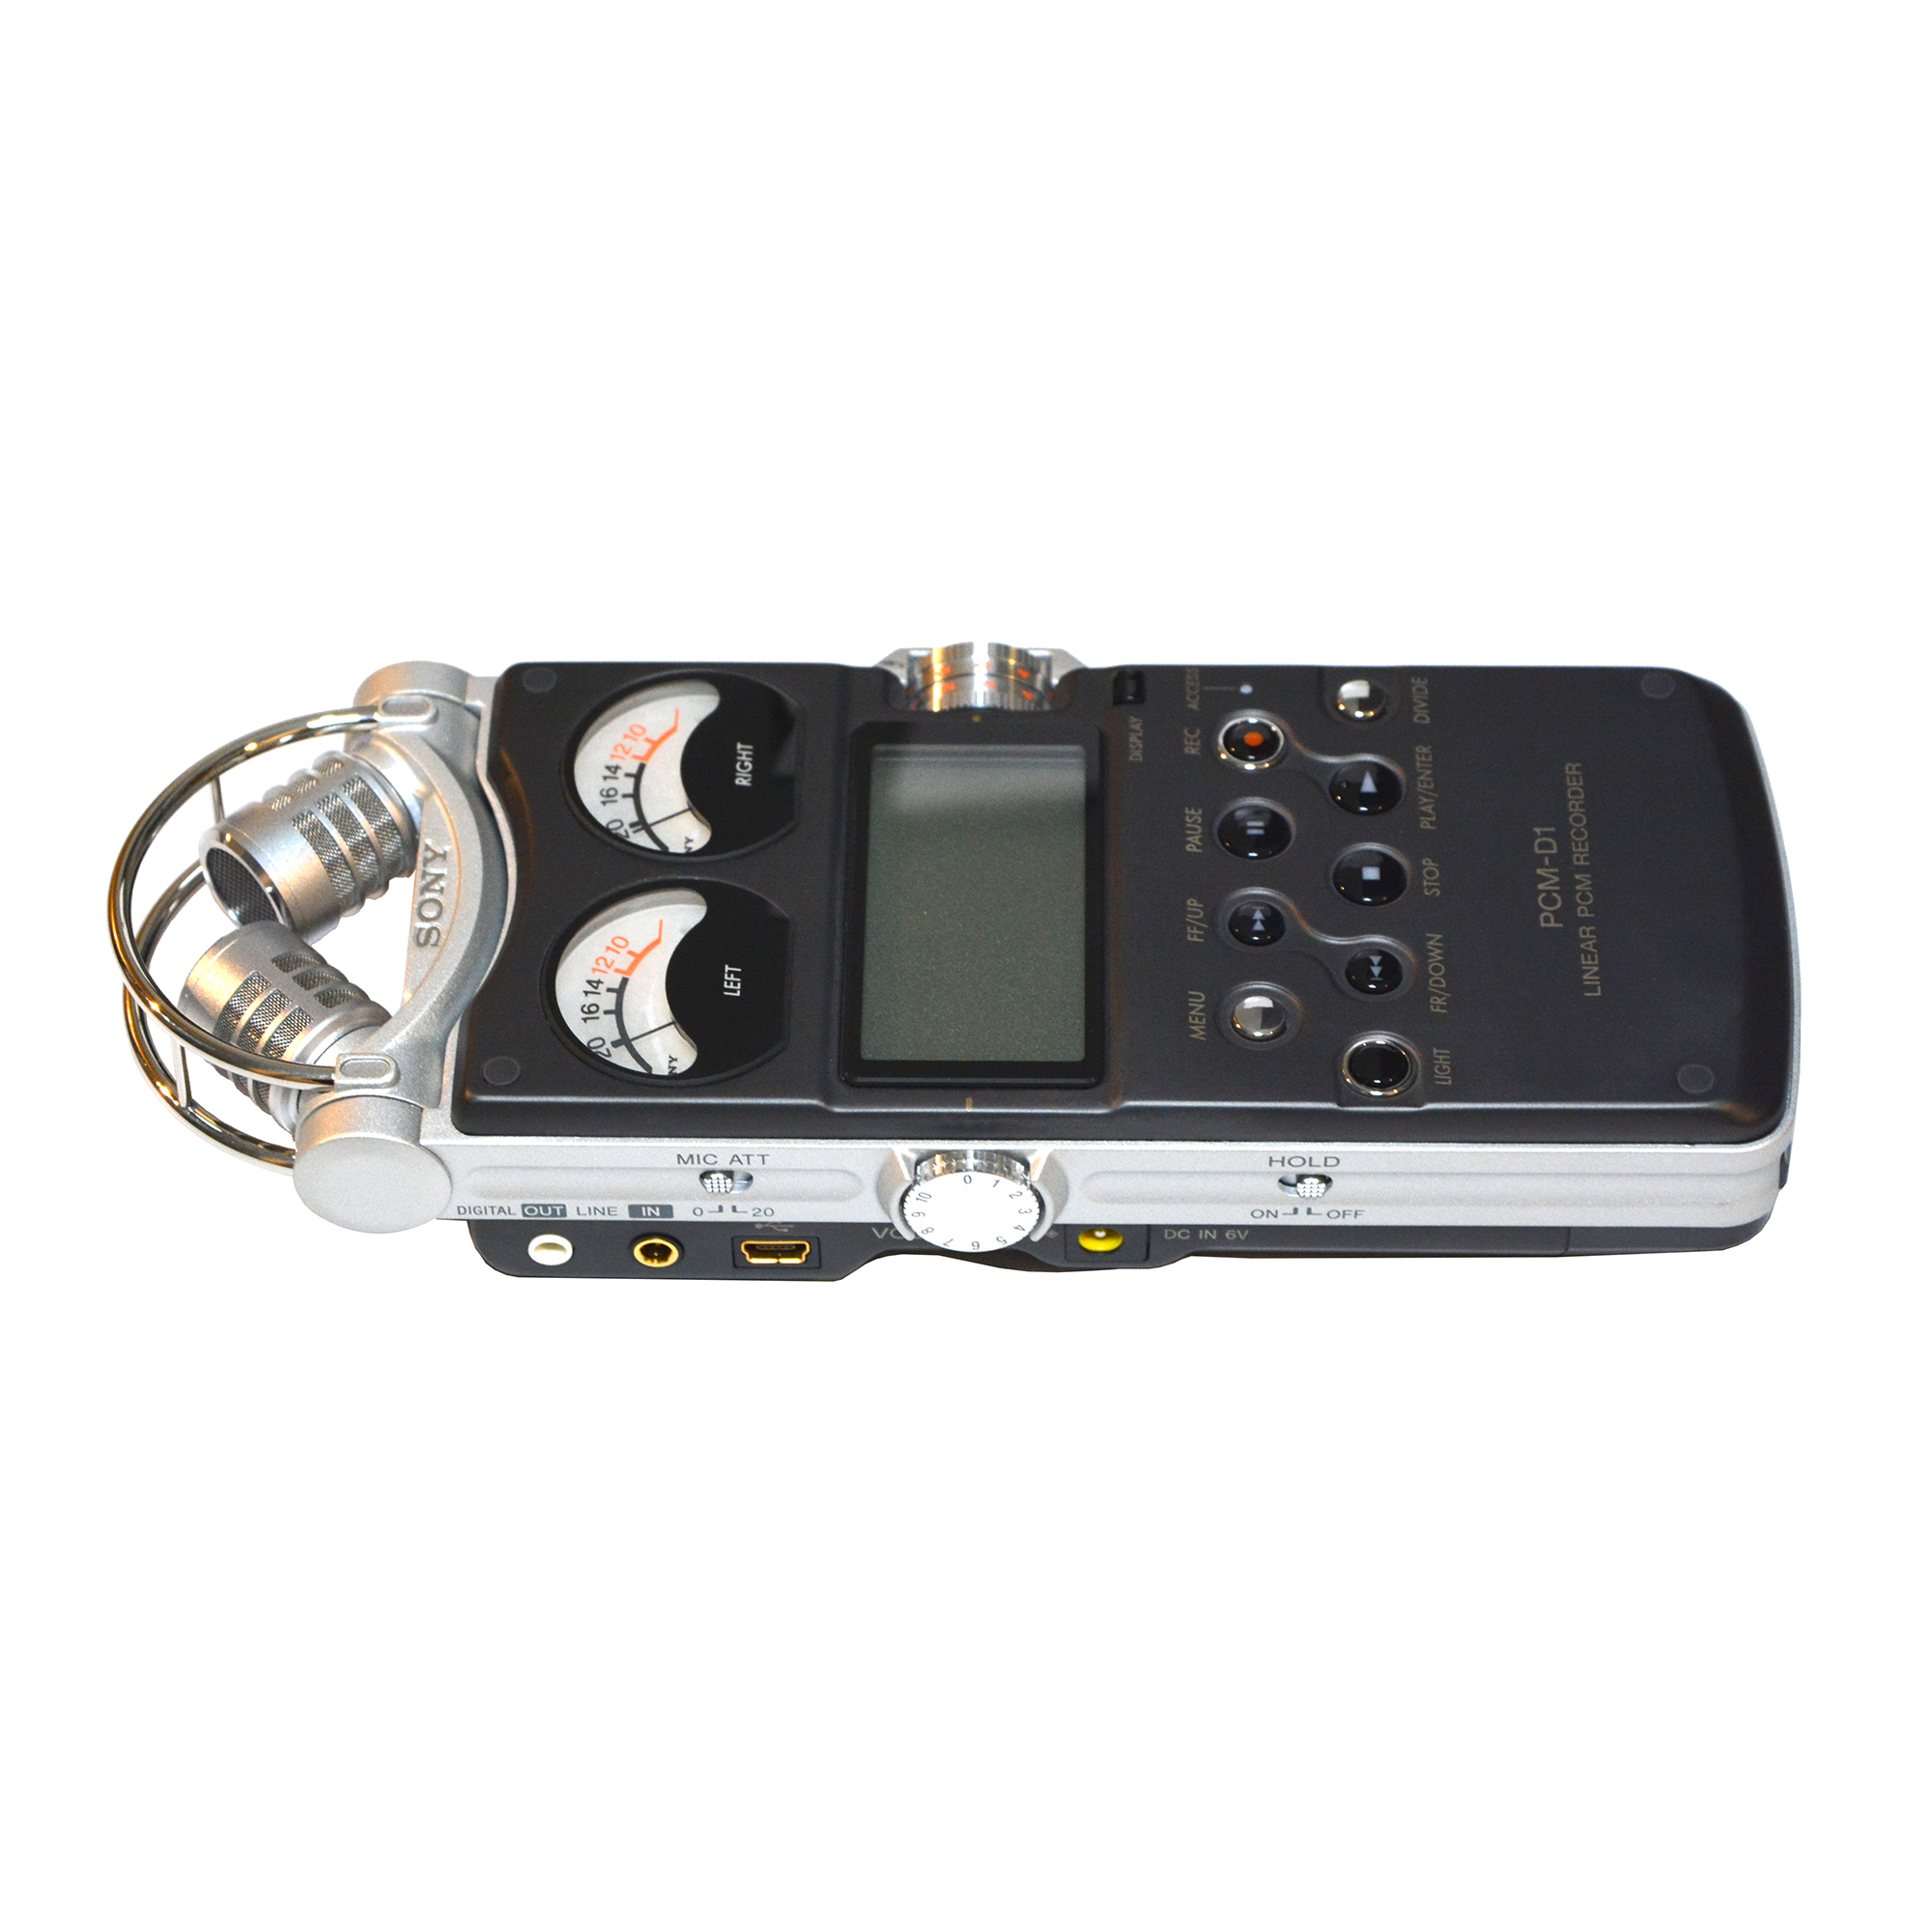 ضبط صوت سونی مدل PCM-D1